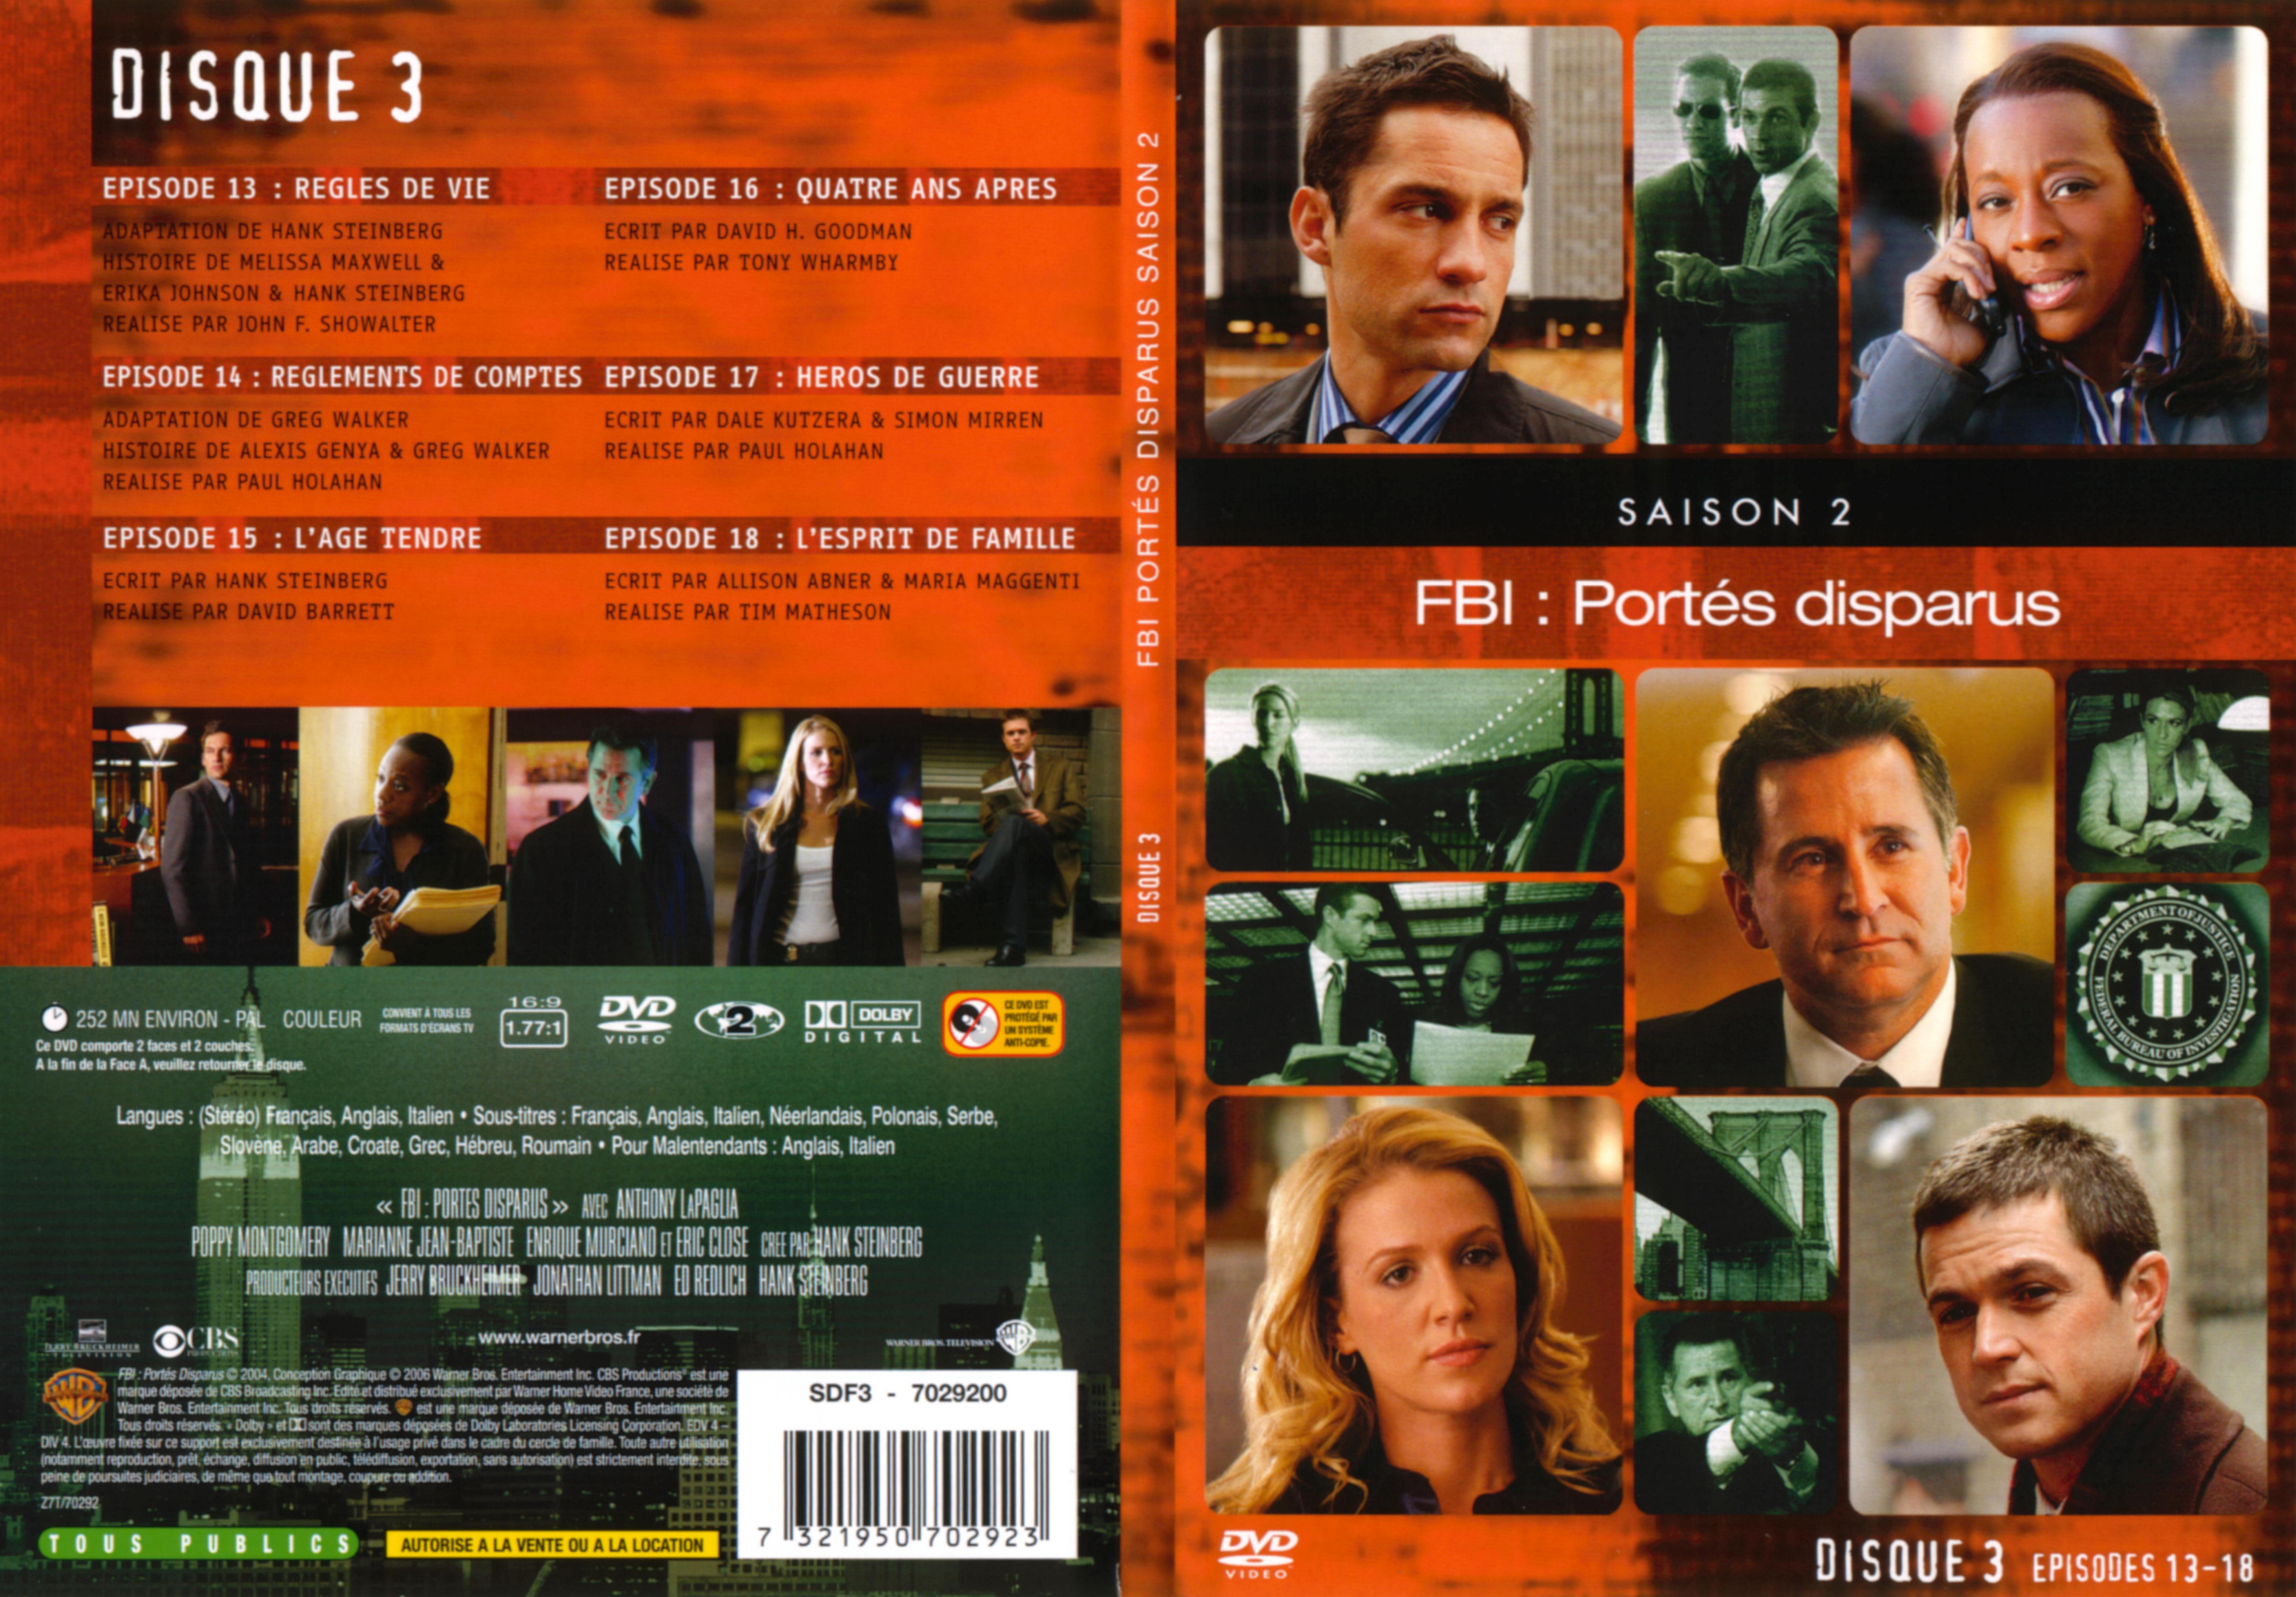 Jaquette DVD FBI ports disparus Saison 2 vol 3